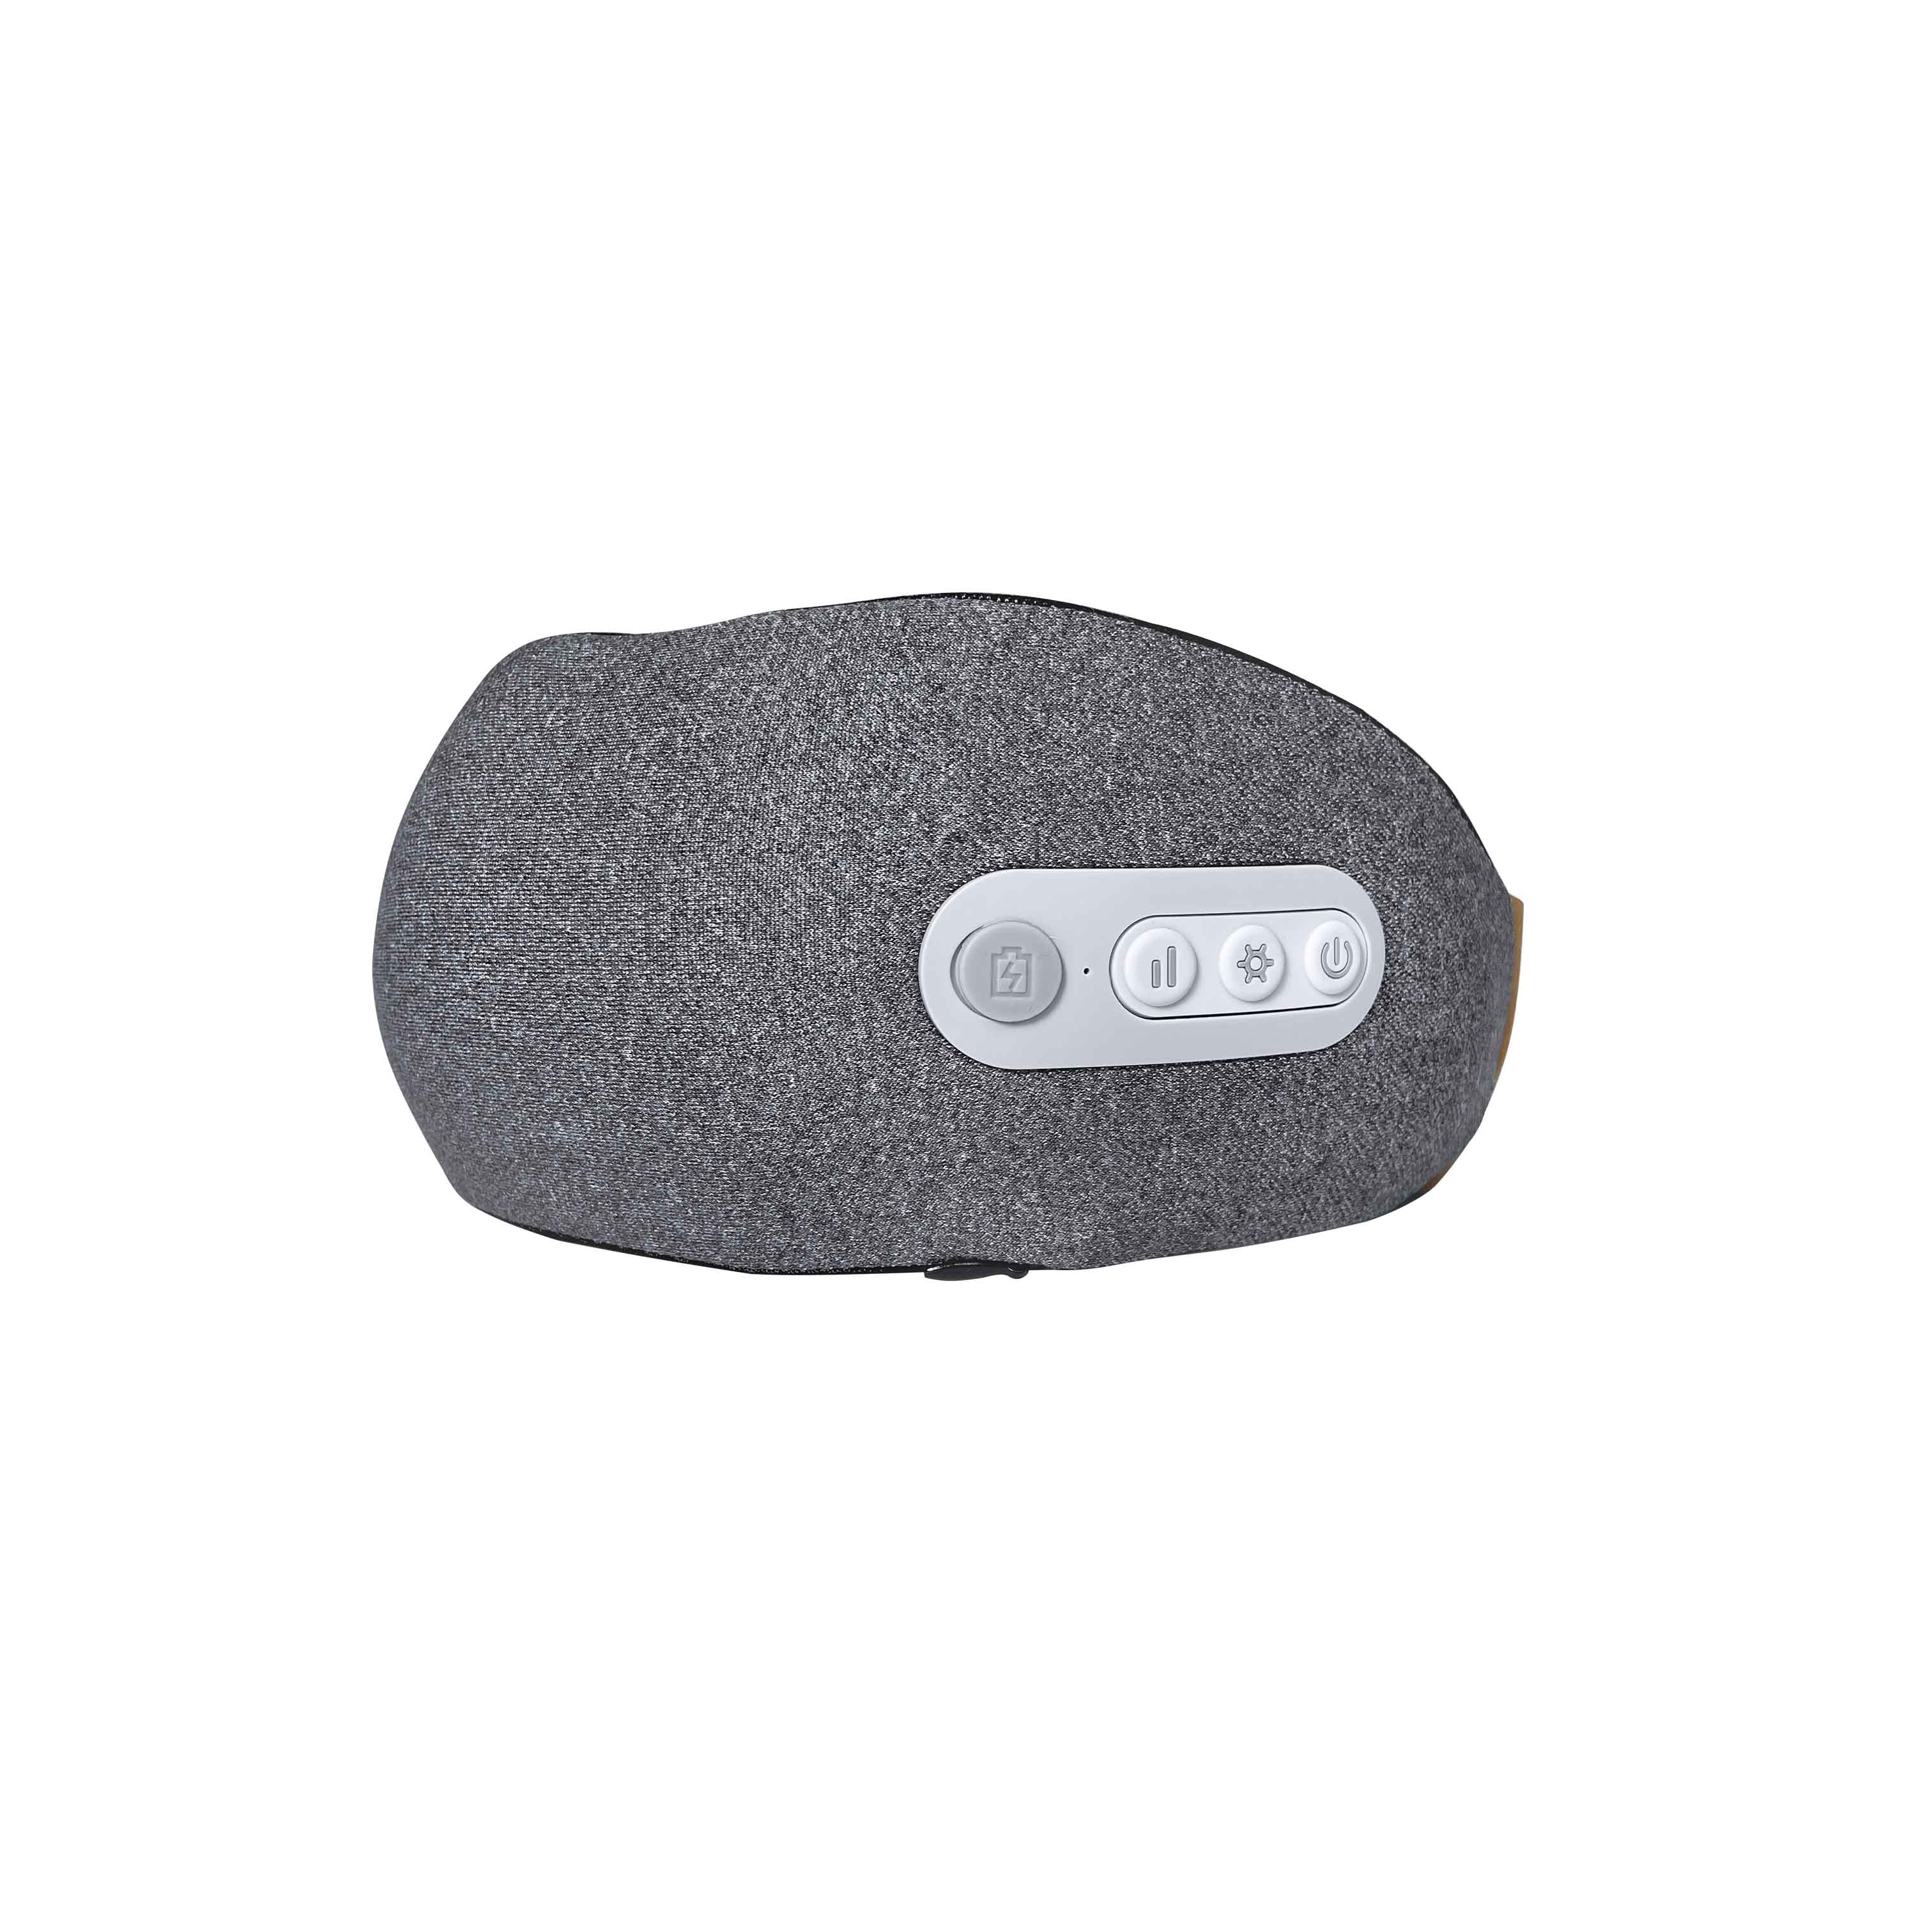 Zmind P012 smart Heated And Vibration u shaped massage pillow 